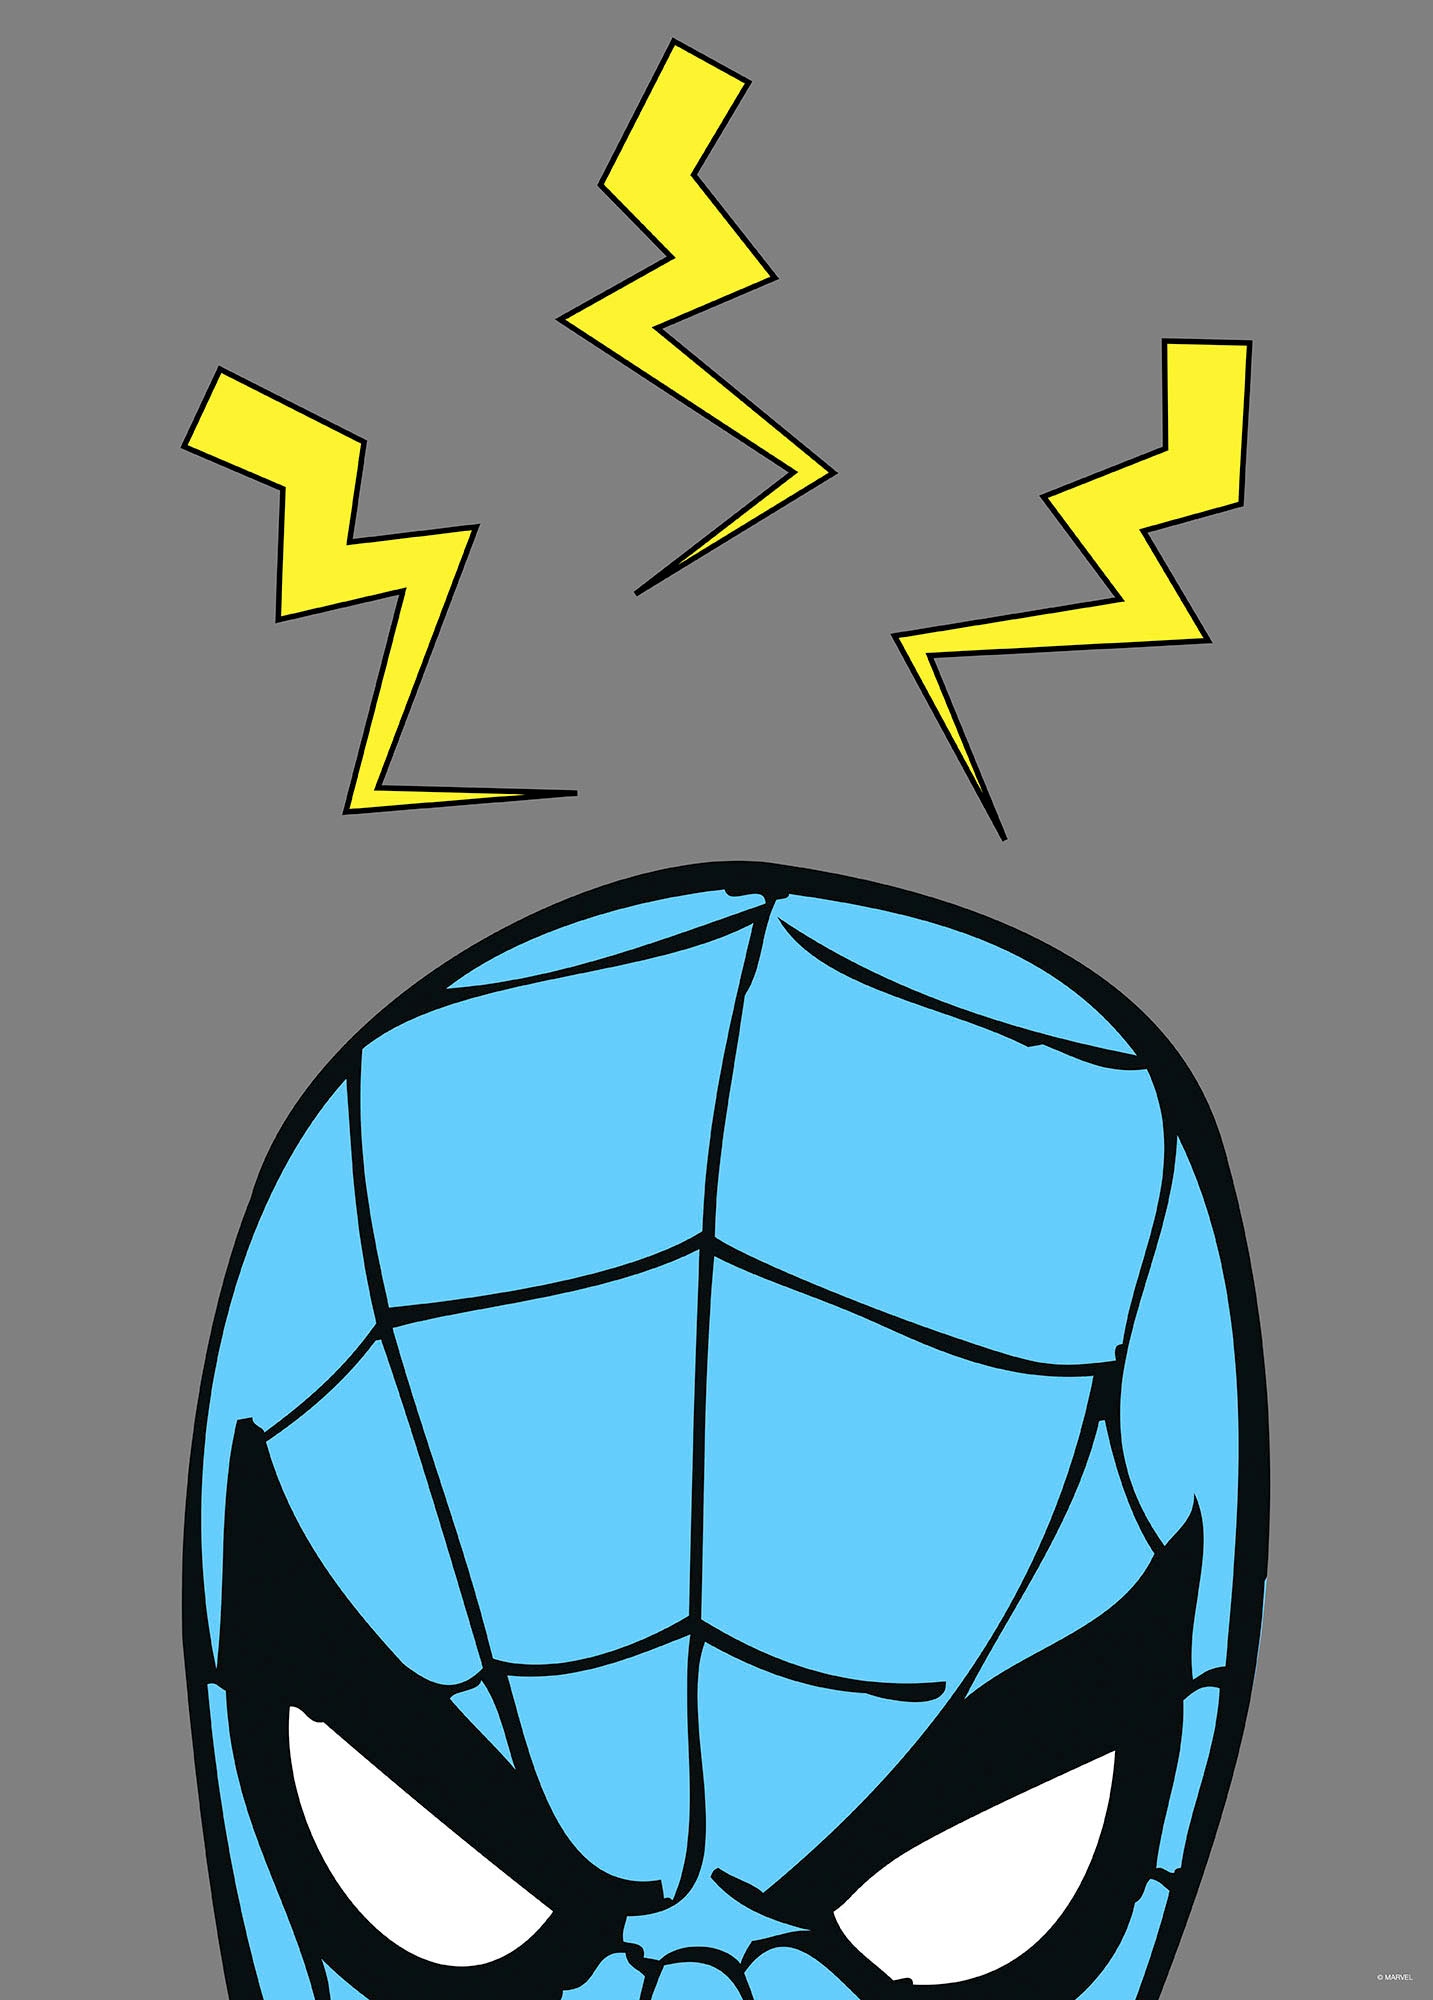 Komar Wandbild »Marvel PowerUp Spider-Man Sense«, (1 St.), Deutsches Premium-Poster Fotopapier mit seidenmatter Oberfläche und hoher Lichtbeständigkeit. Für fotorealistische Drucke mit gestochen scharfen Details und hervorragender Farbbrillanz.